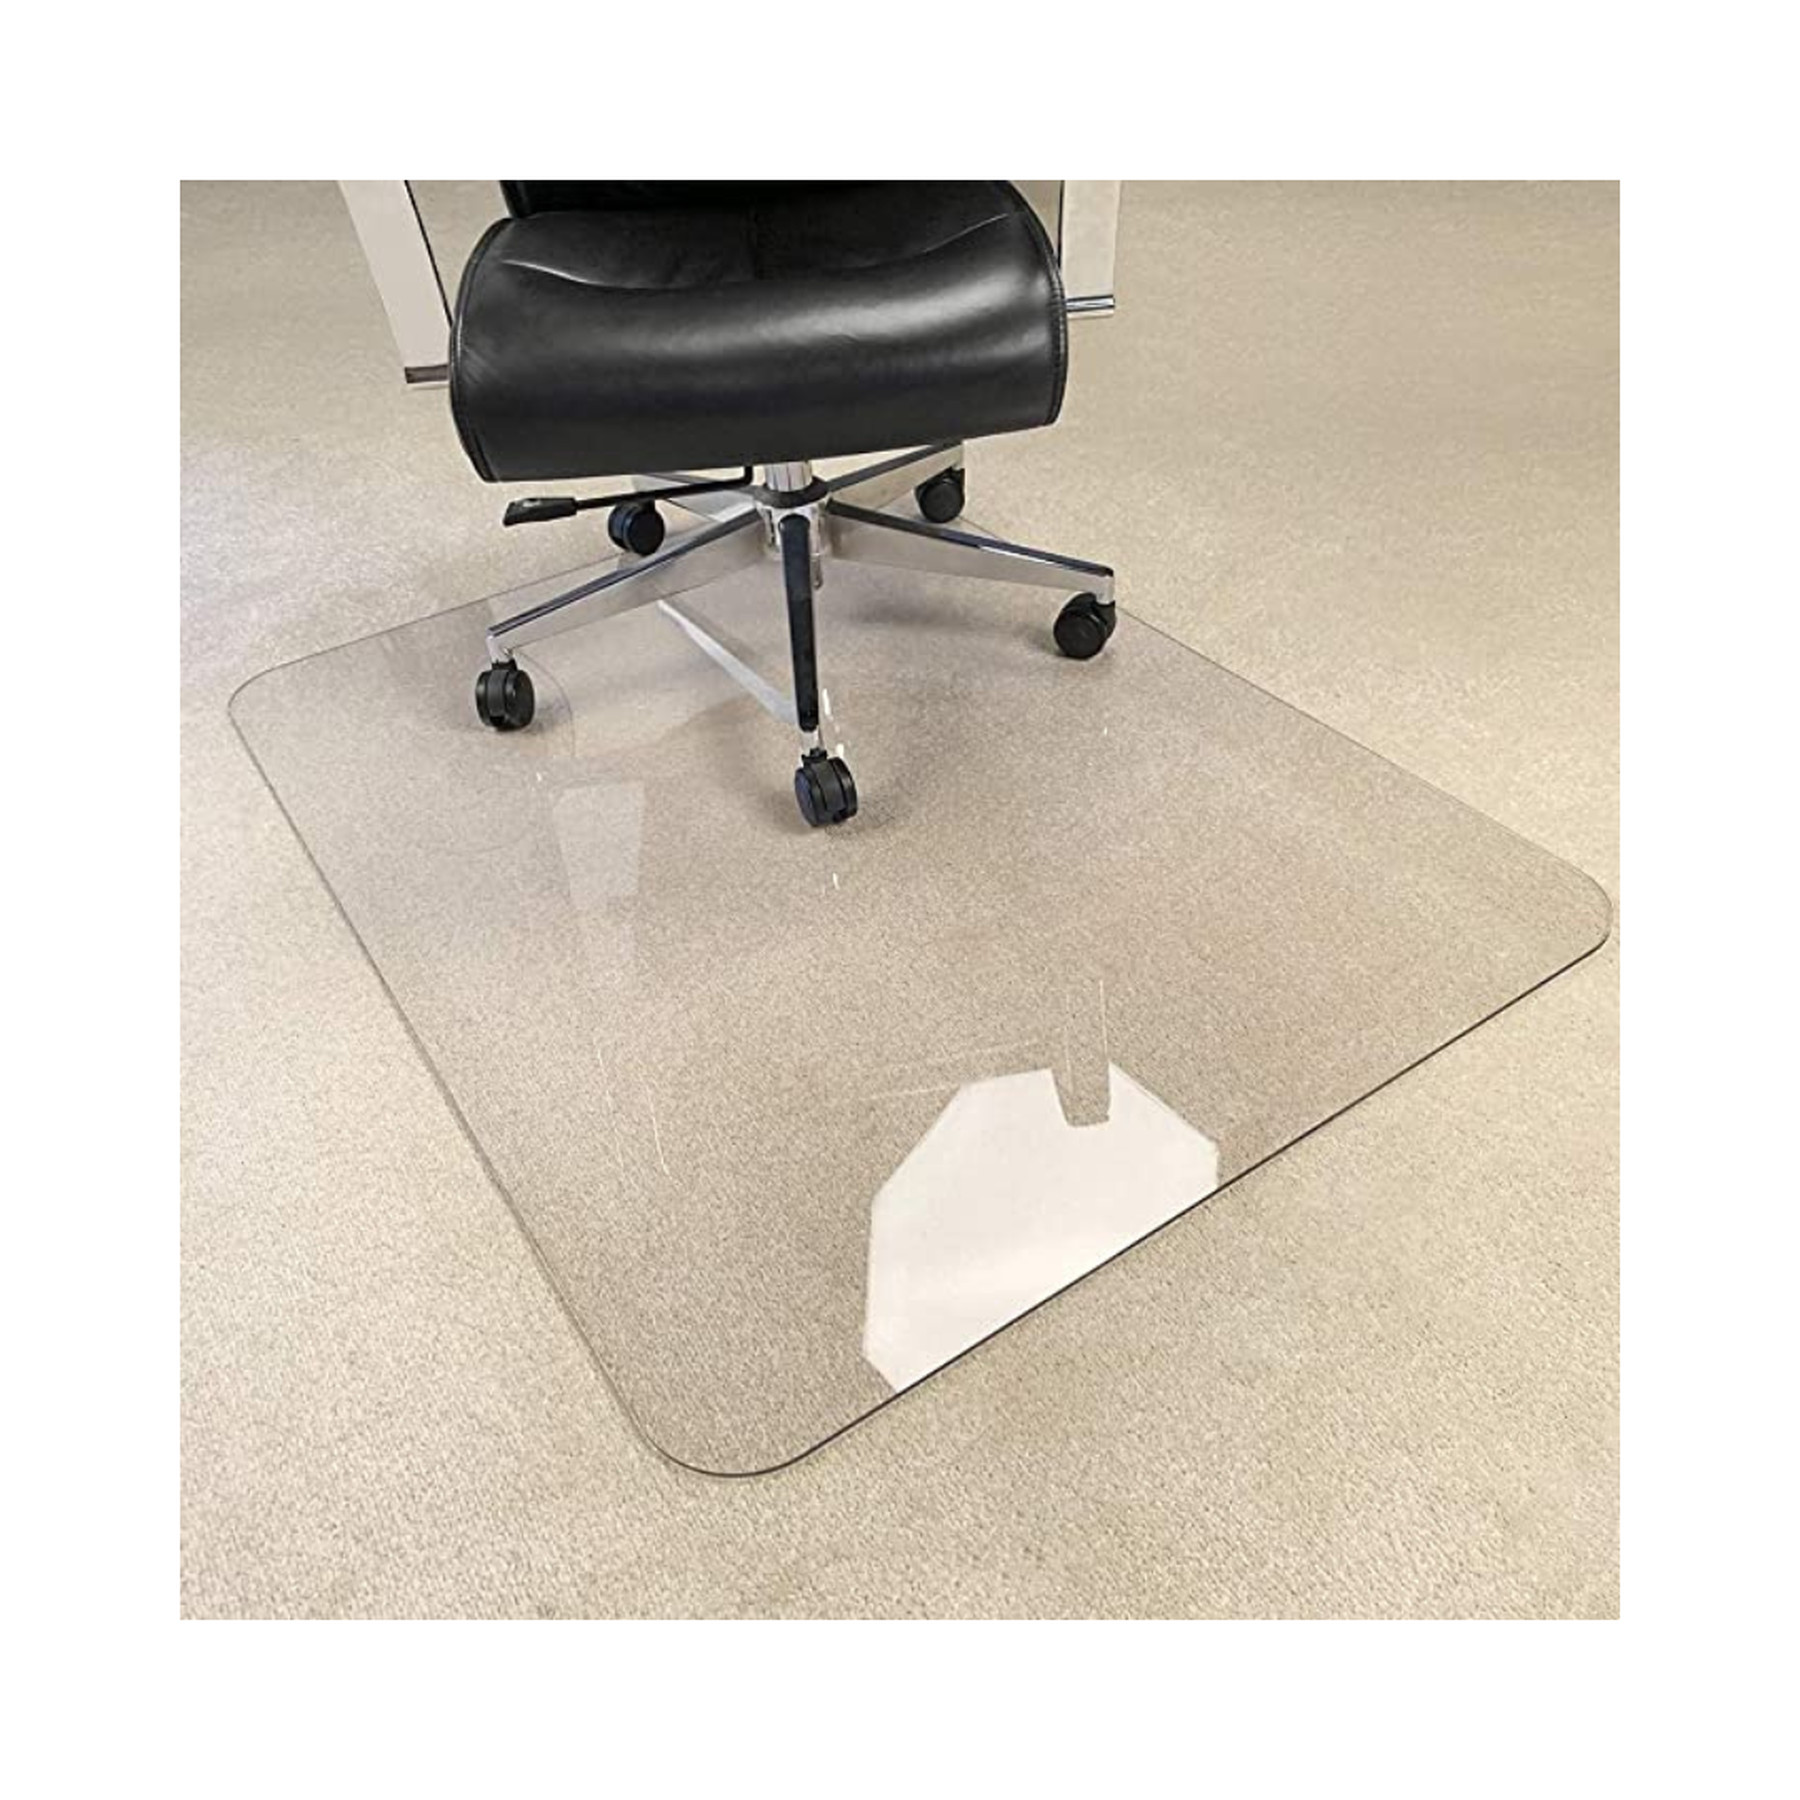 Clear_Rectangular Coolmat AOTU Office Chair Mat Desk mat for Hardwood Floor Computer Chair Mat Heavy Duty Hard Floor Protector 